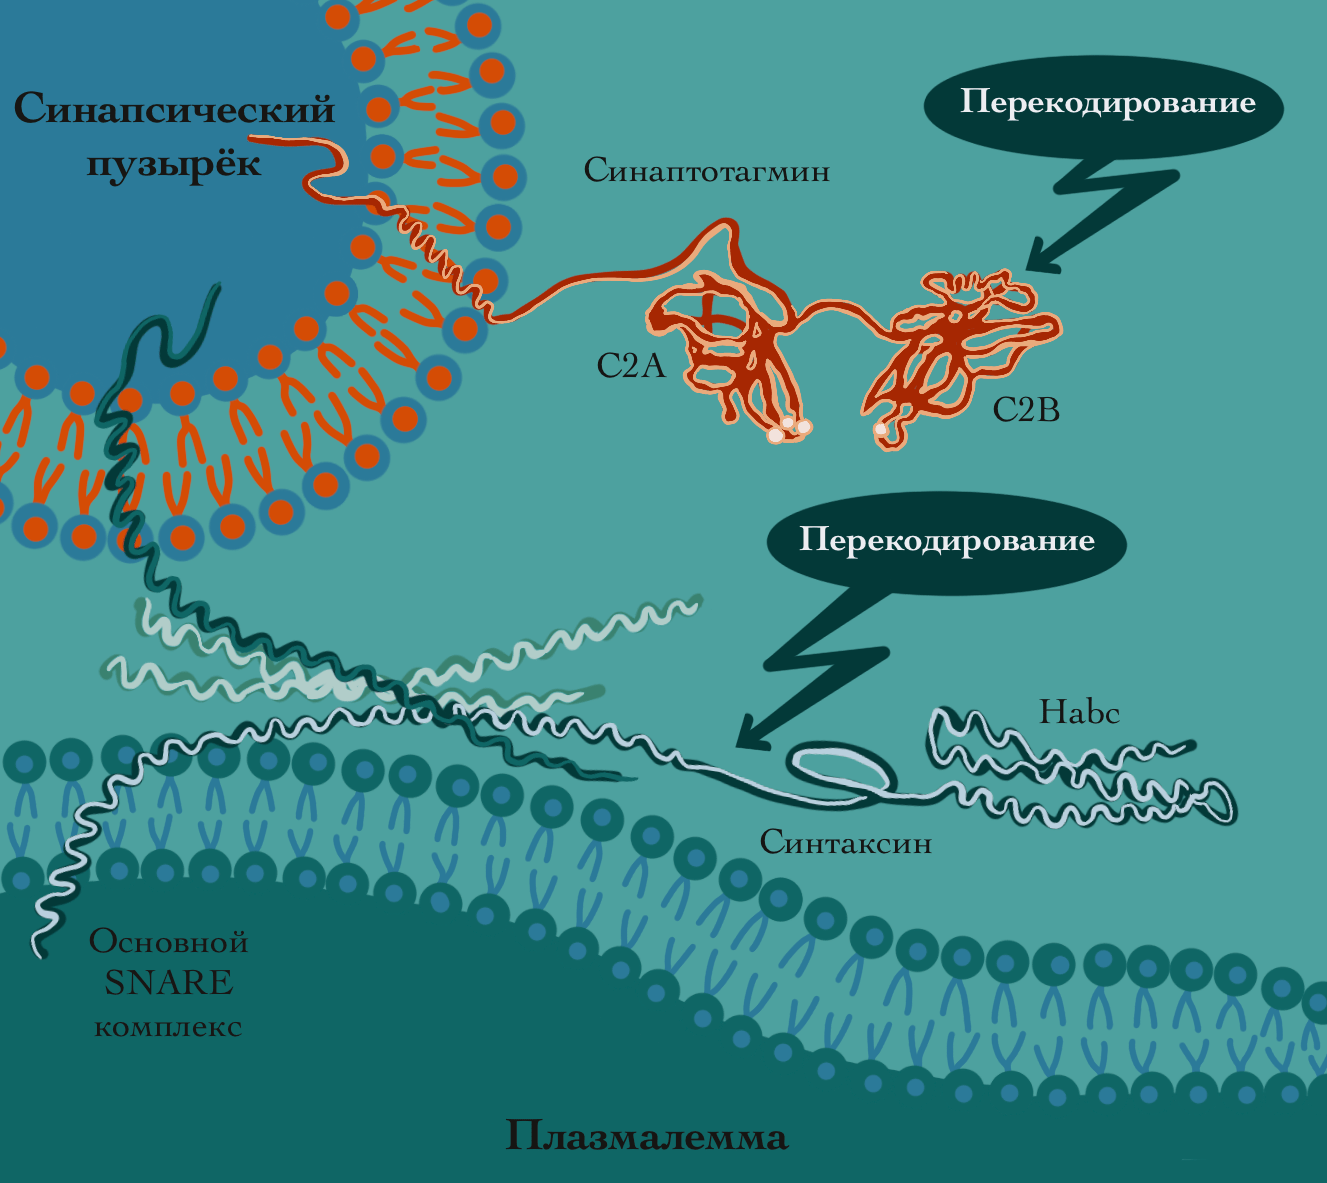 SNARE-комплекс, обеспечивающий слияние синаптических пузырьков с пресинаптической мембраной